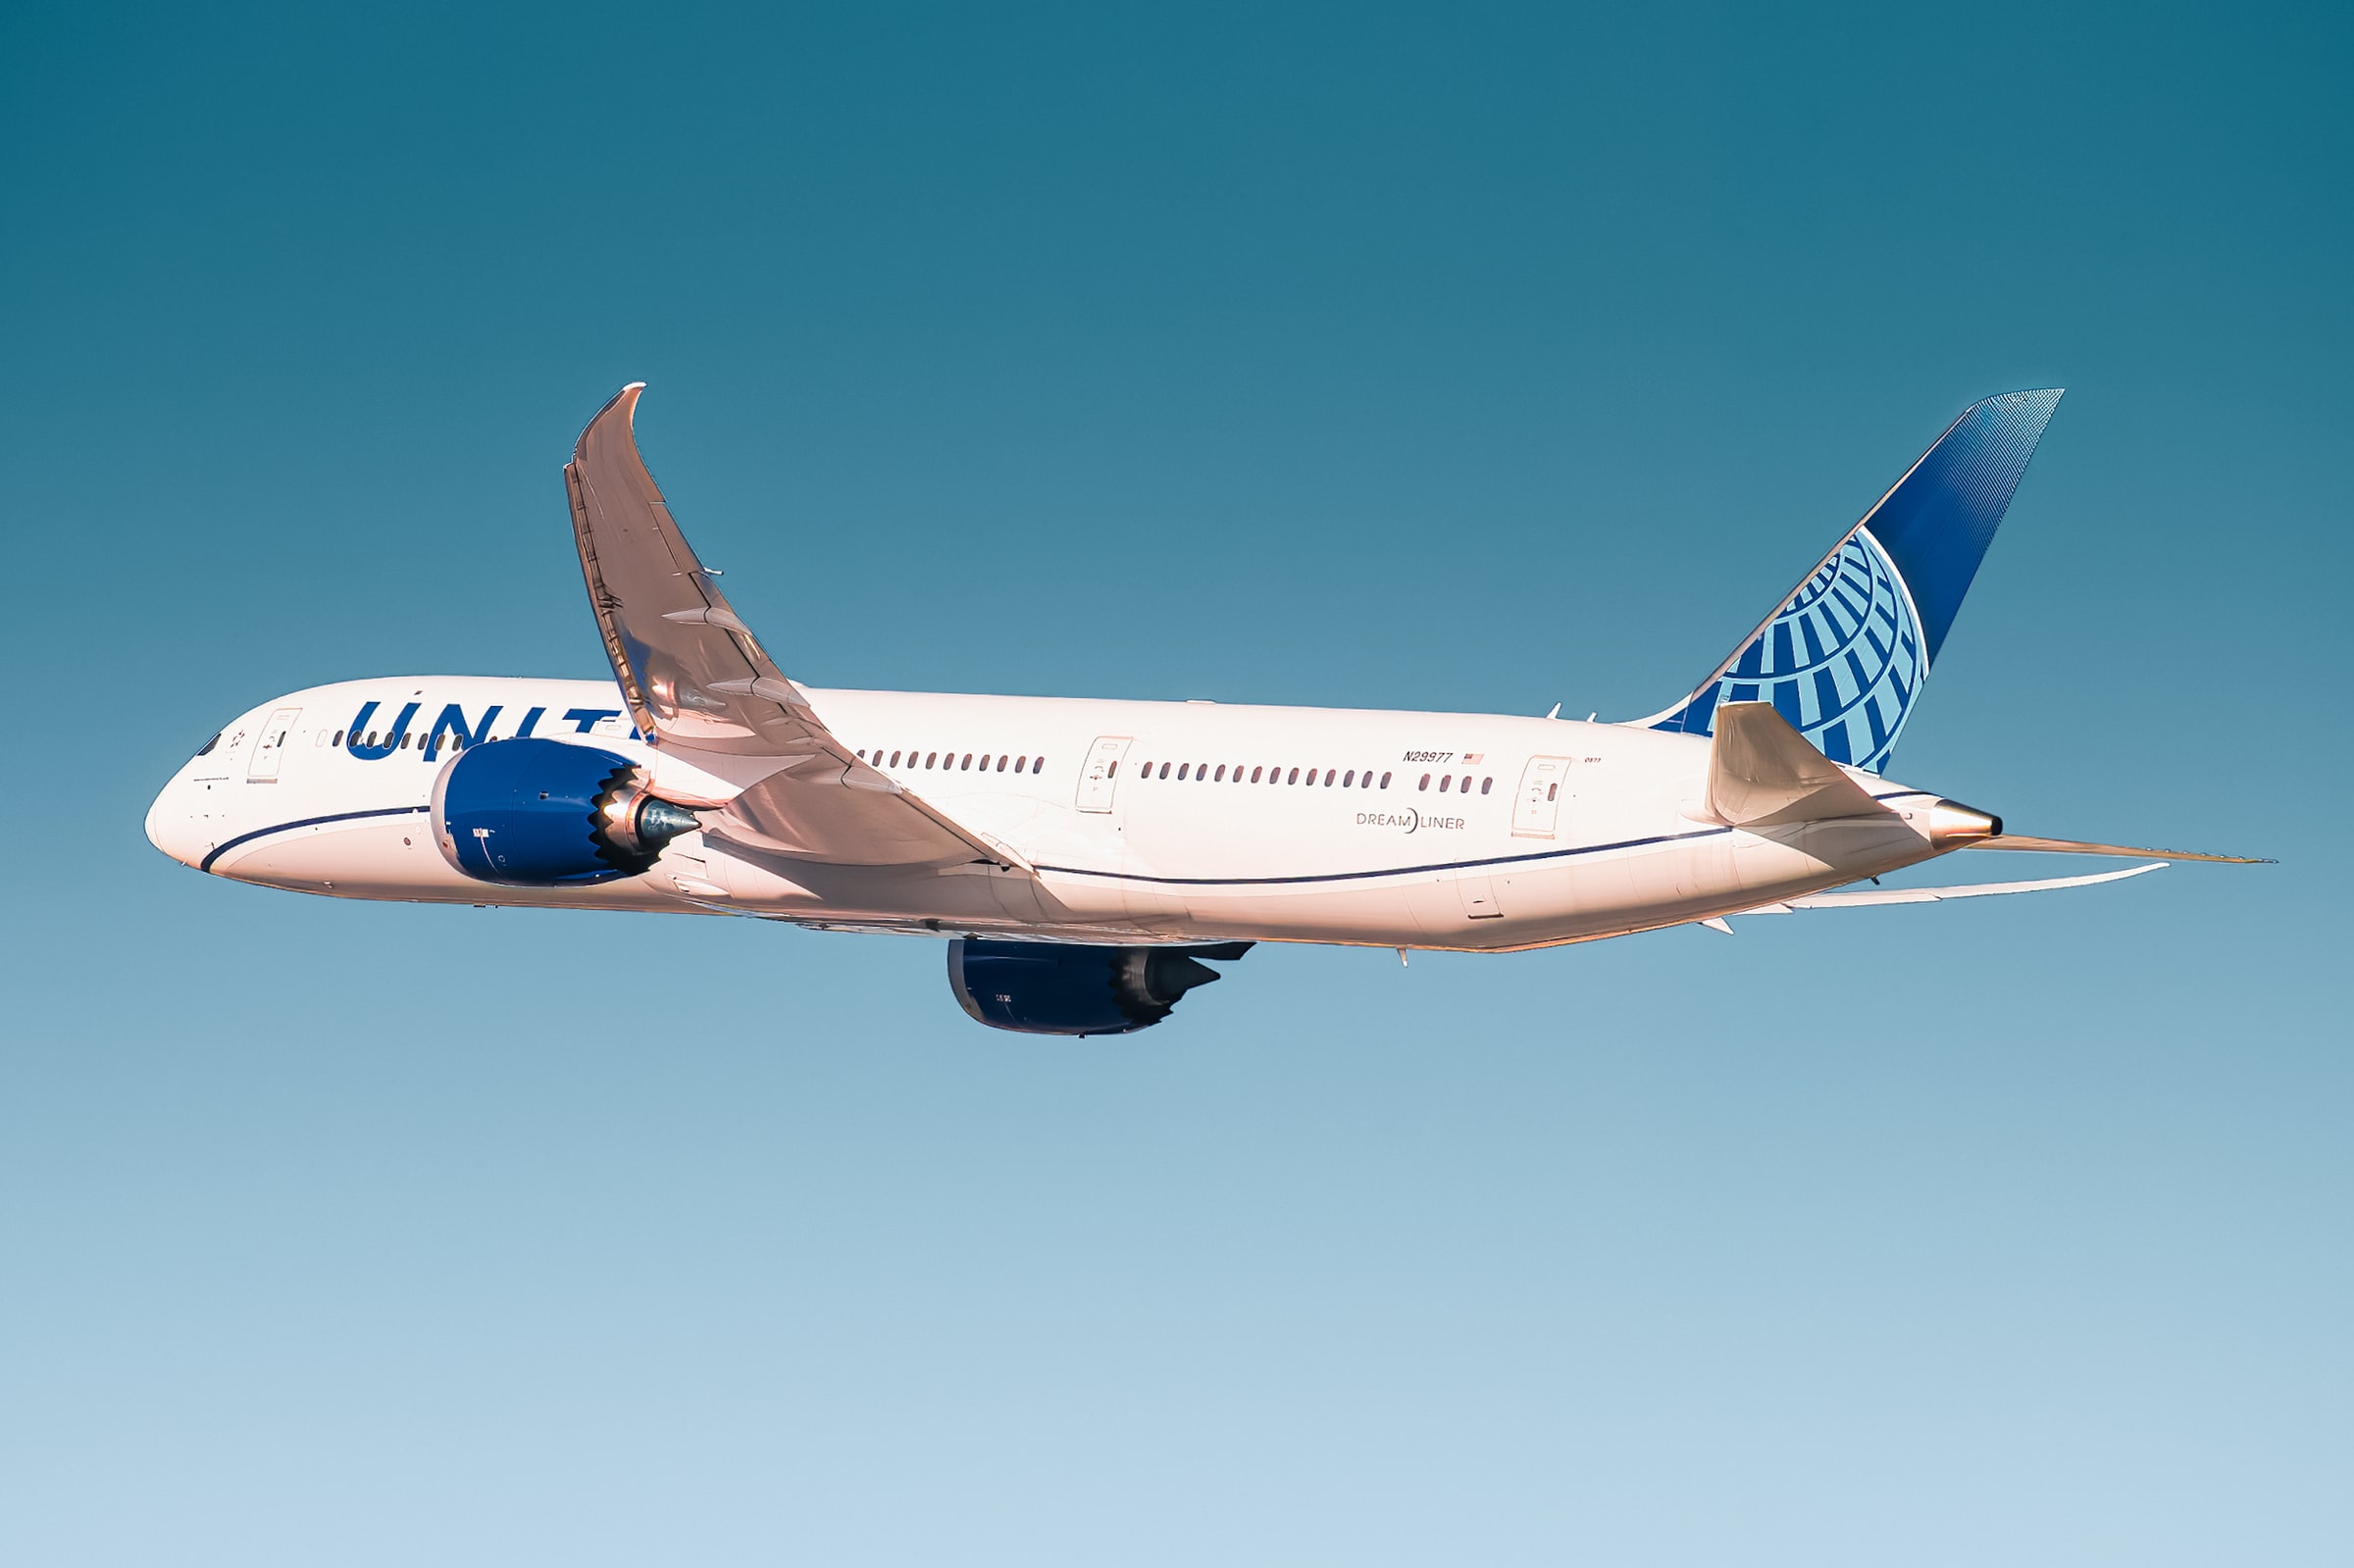 United Airlines Holdings Inc (Nasdaq: UAL) lade sin största flygplansorder någonsin genom att köpa 200 av Boeings 737 MAX Jets. Detta visar att med att vaccinationsnivåerna